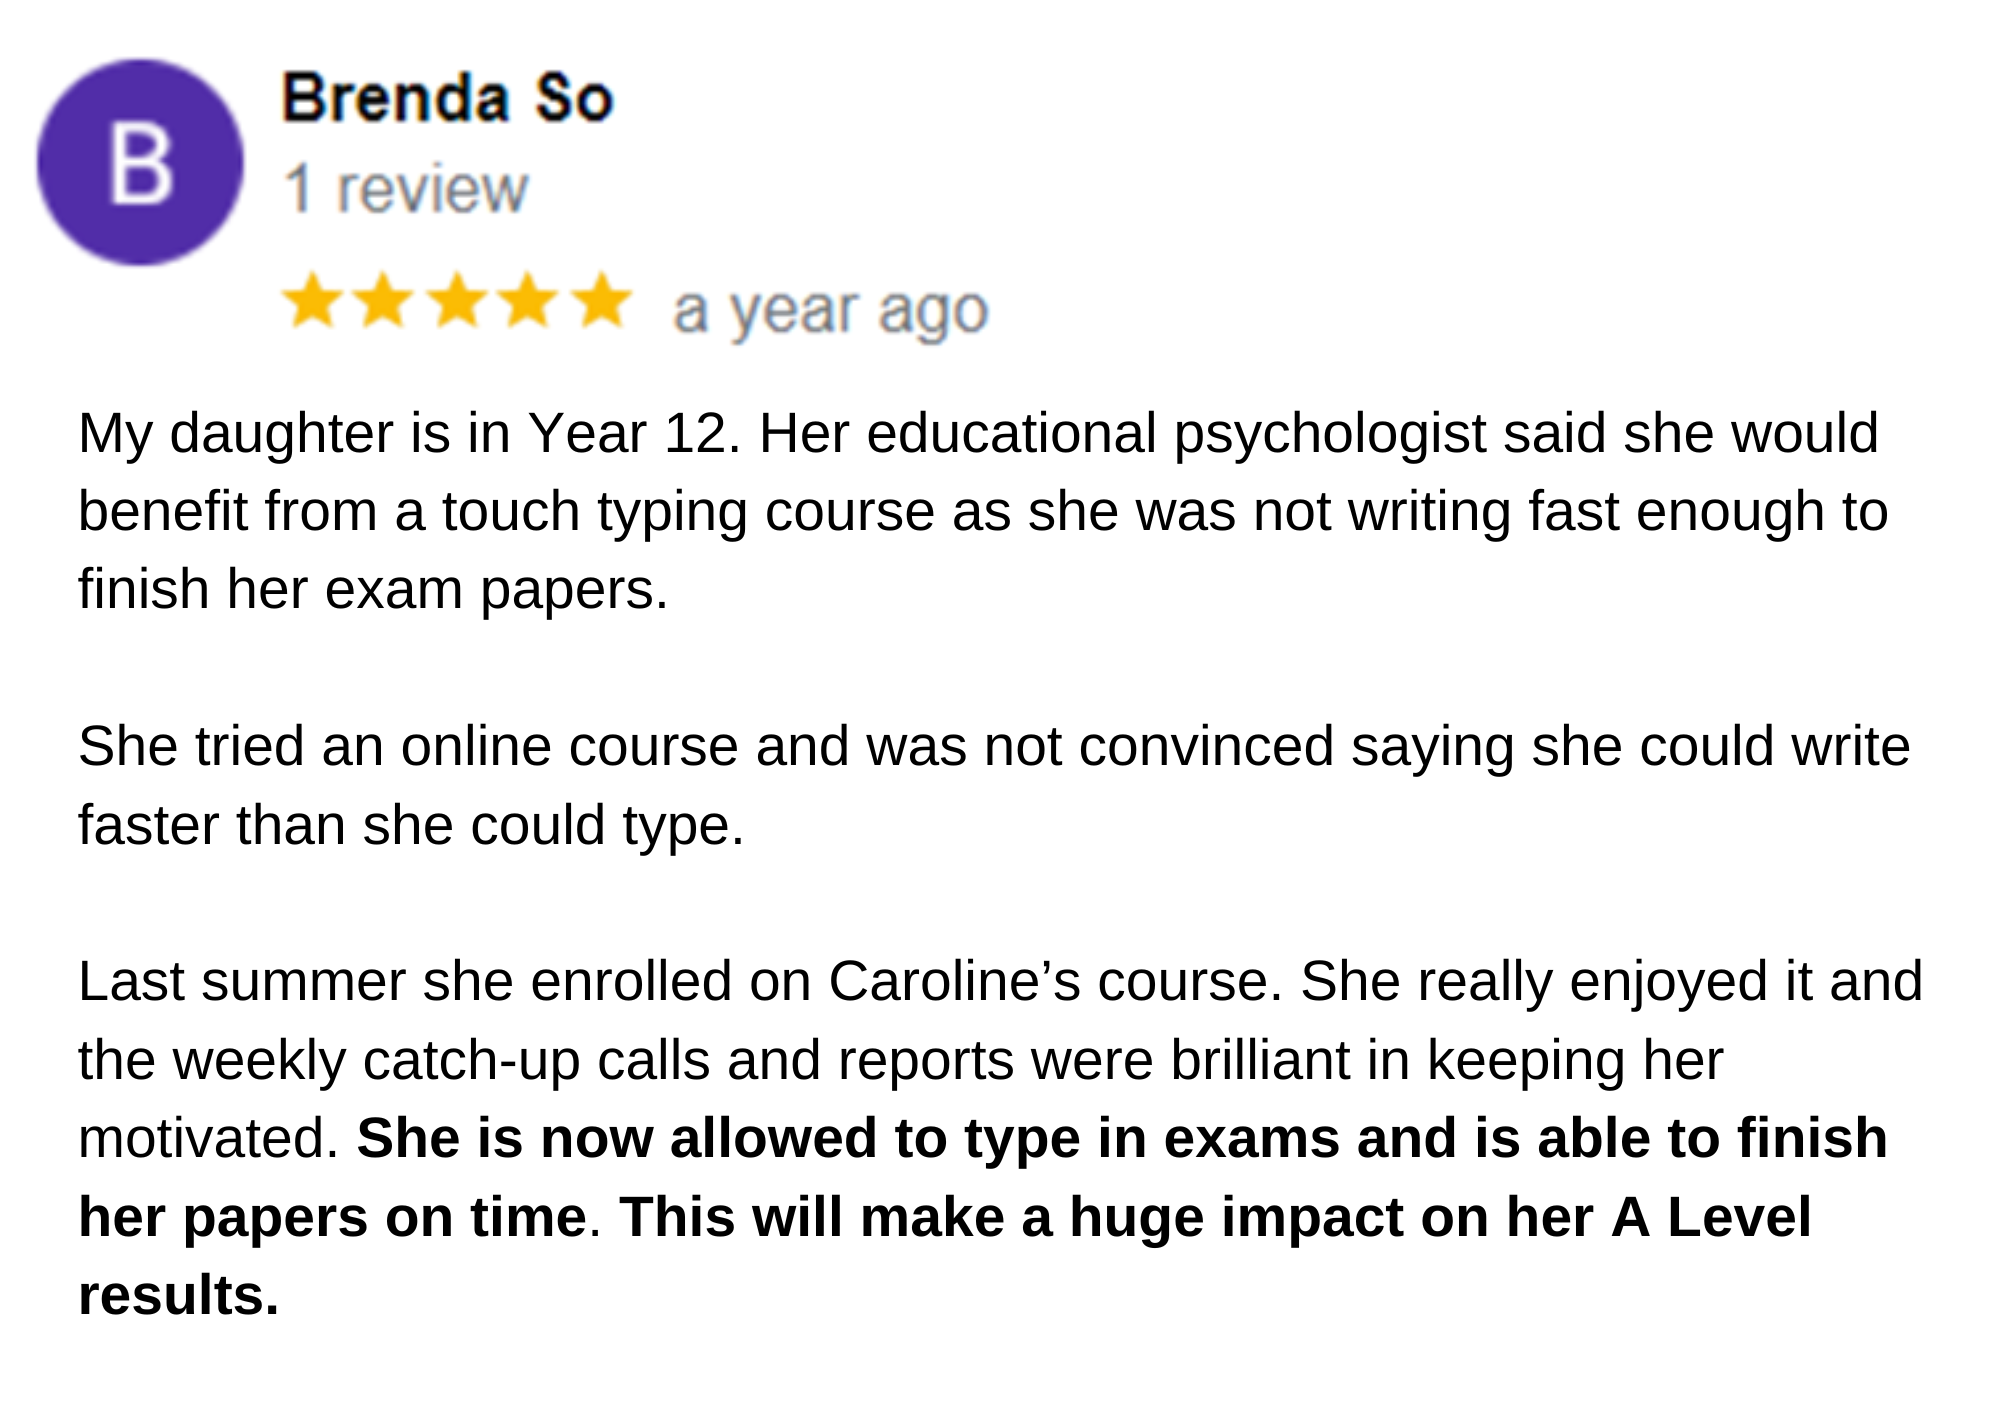 Brenda So Google Review.png